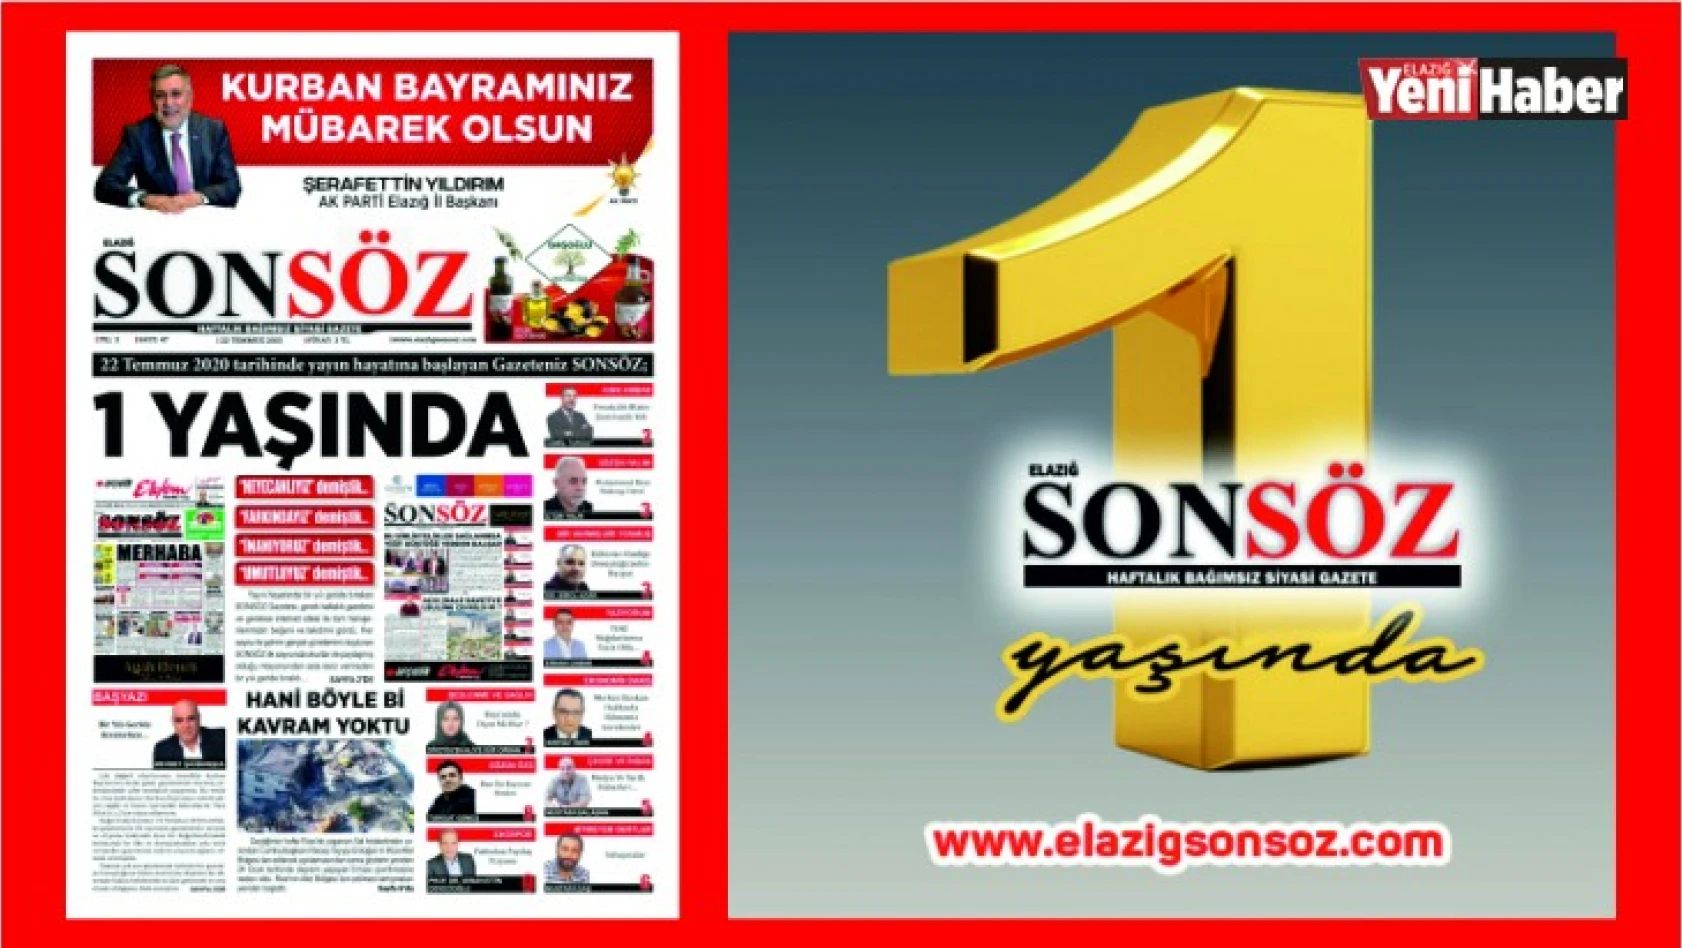 Elazığ Son Söz Gazetesi 1 Yaşında!